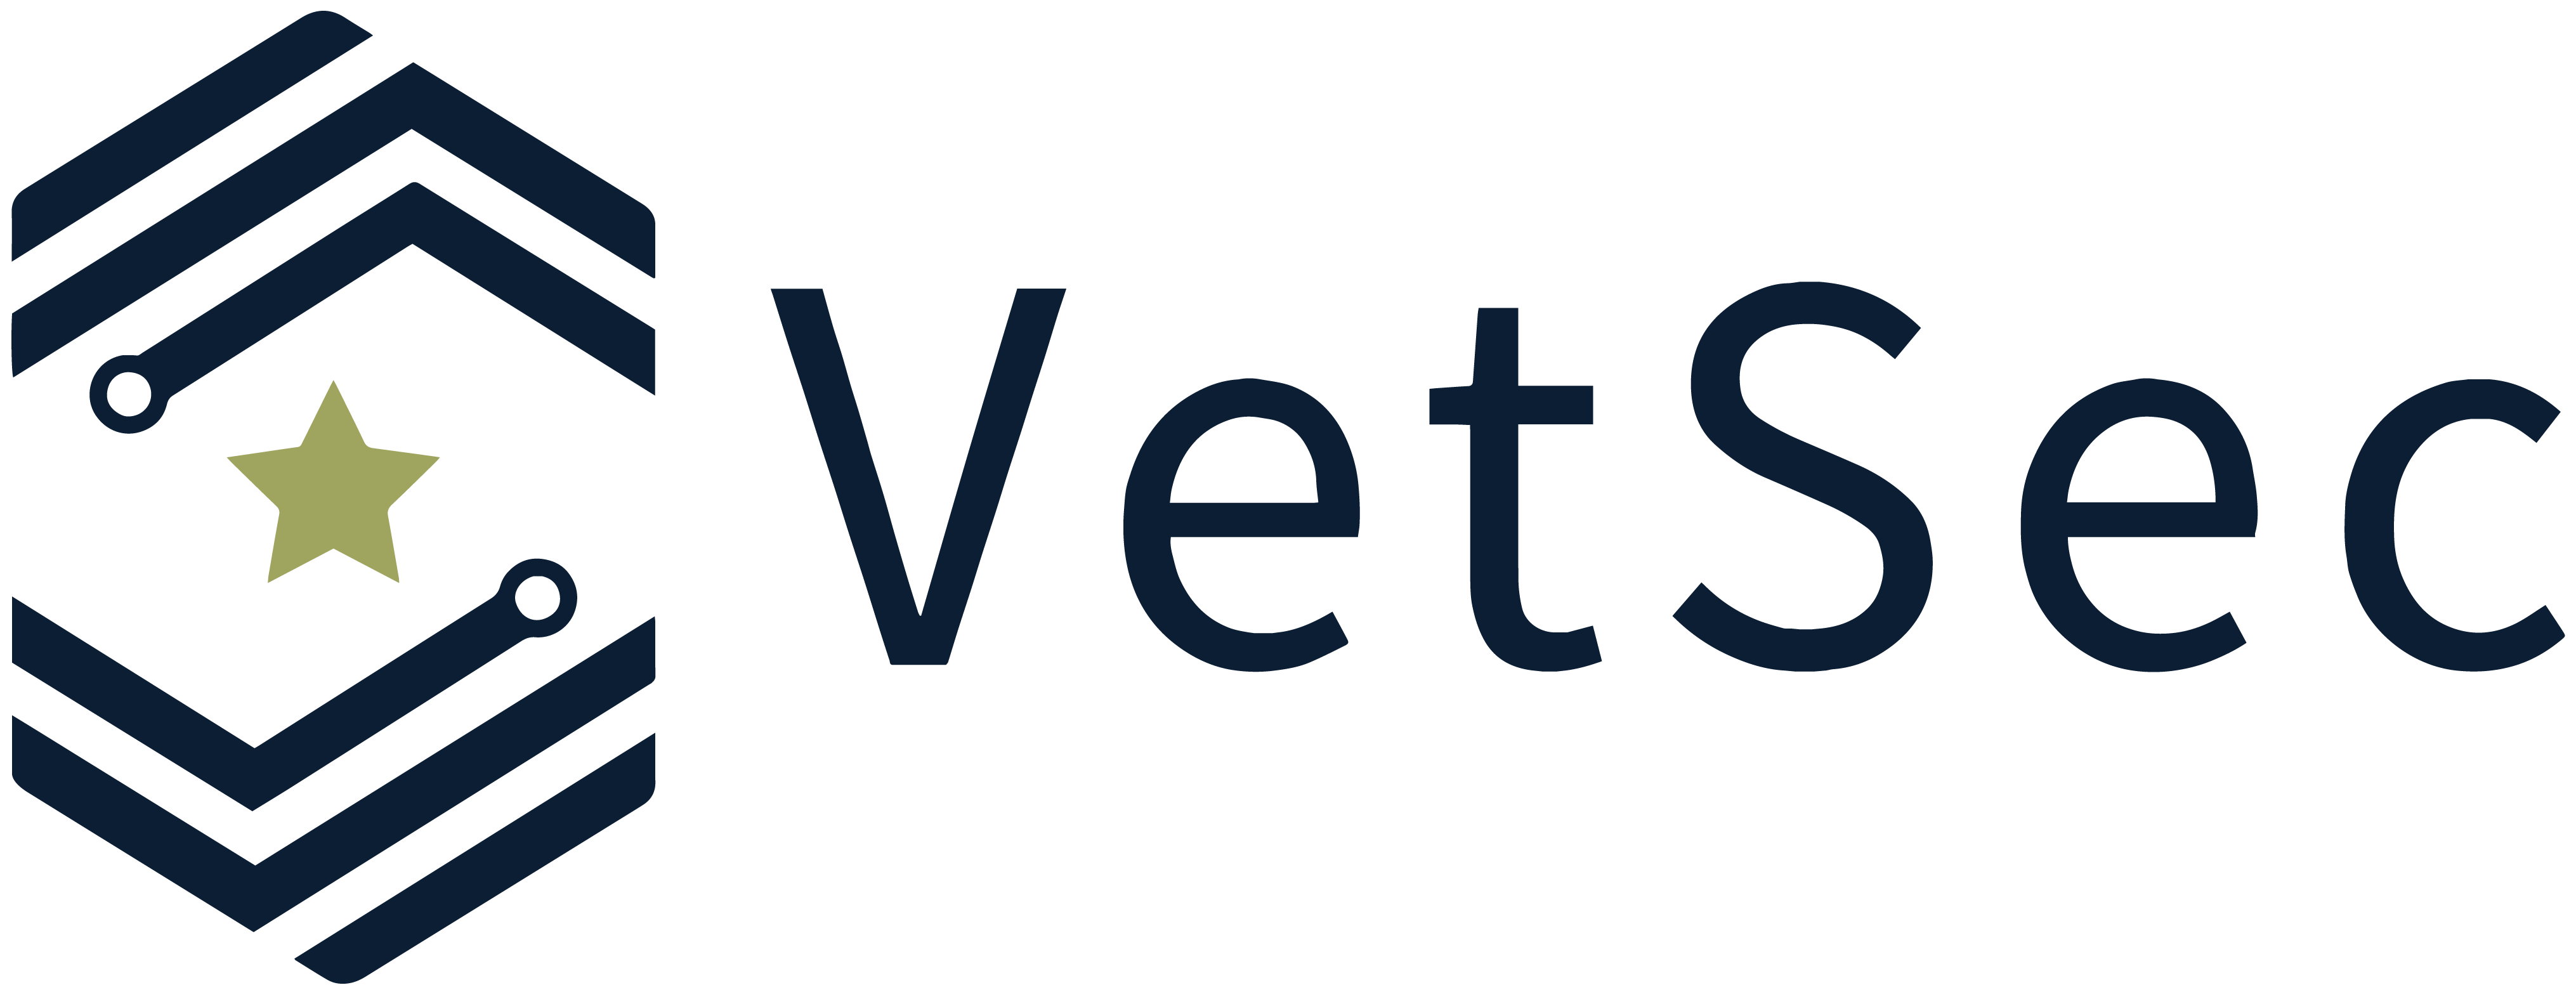 VetSec_logo_color